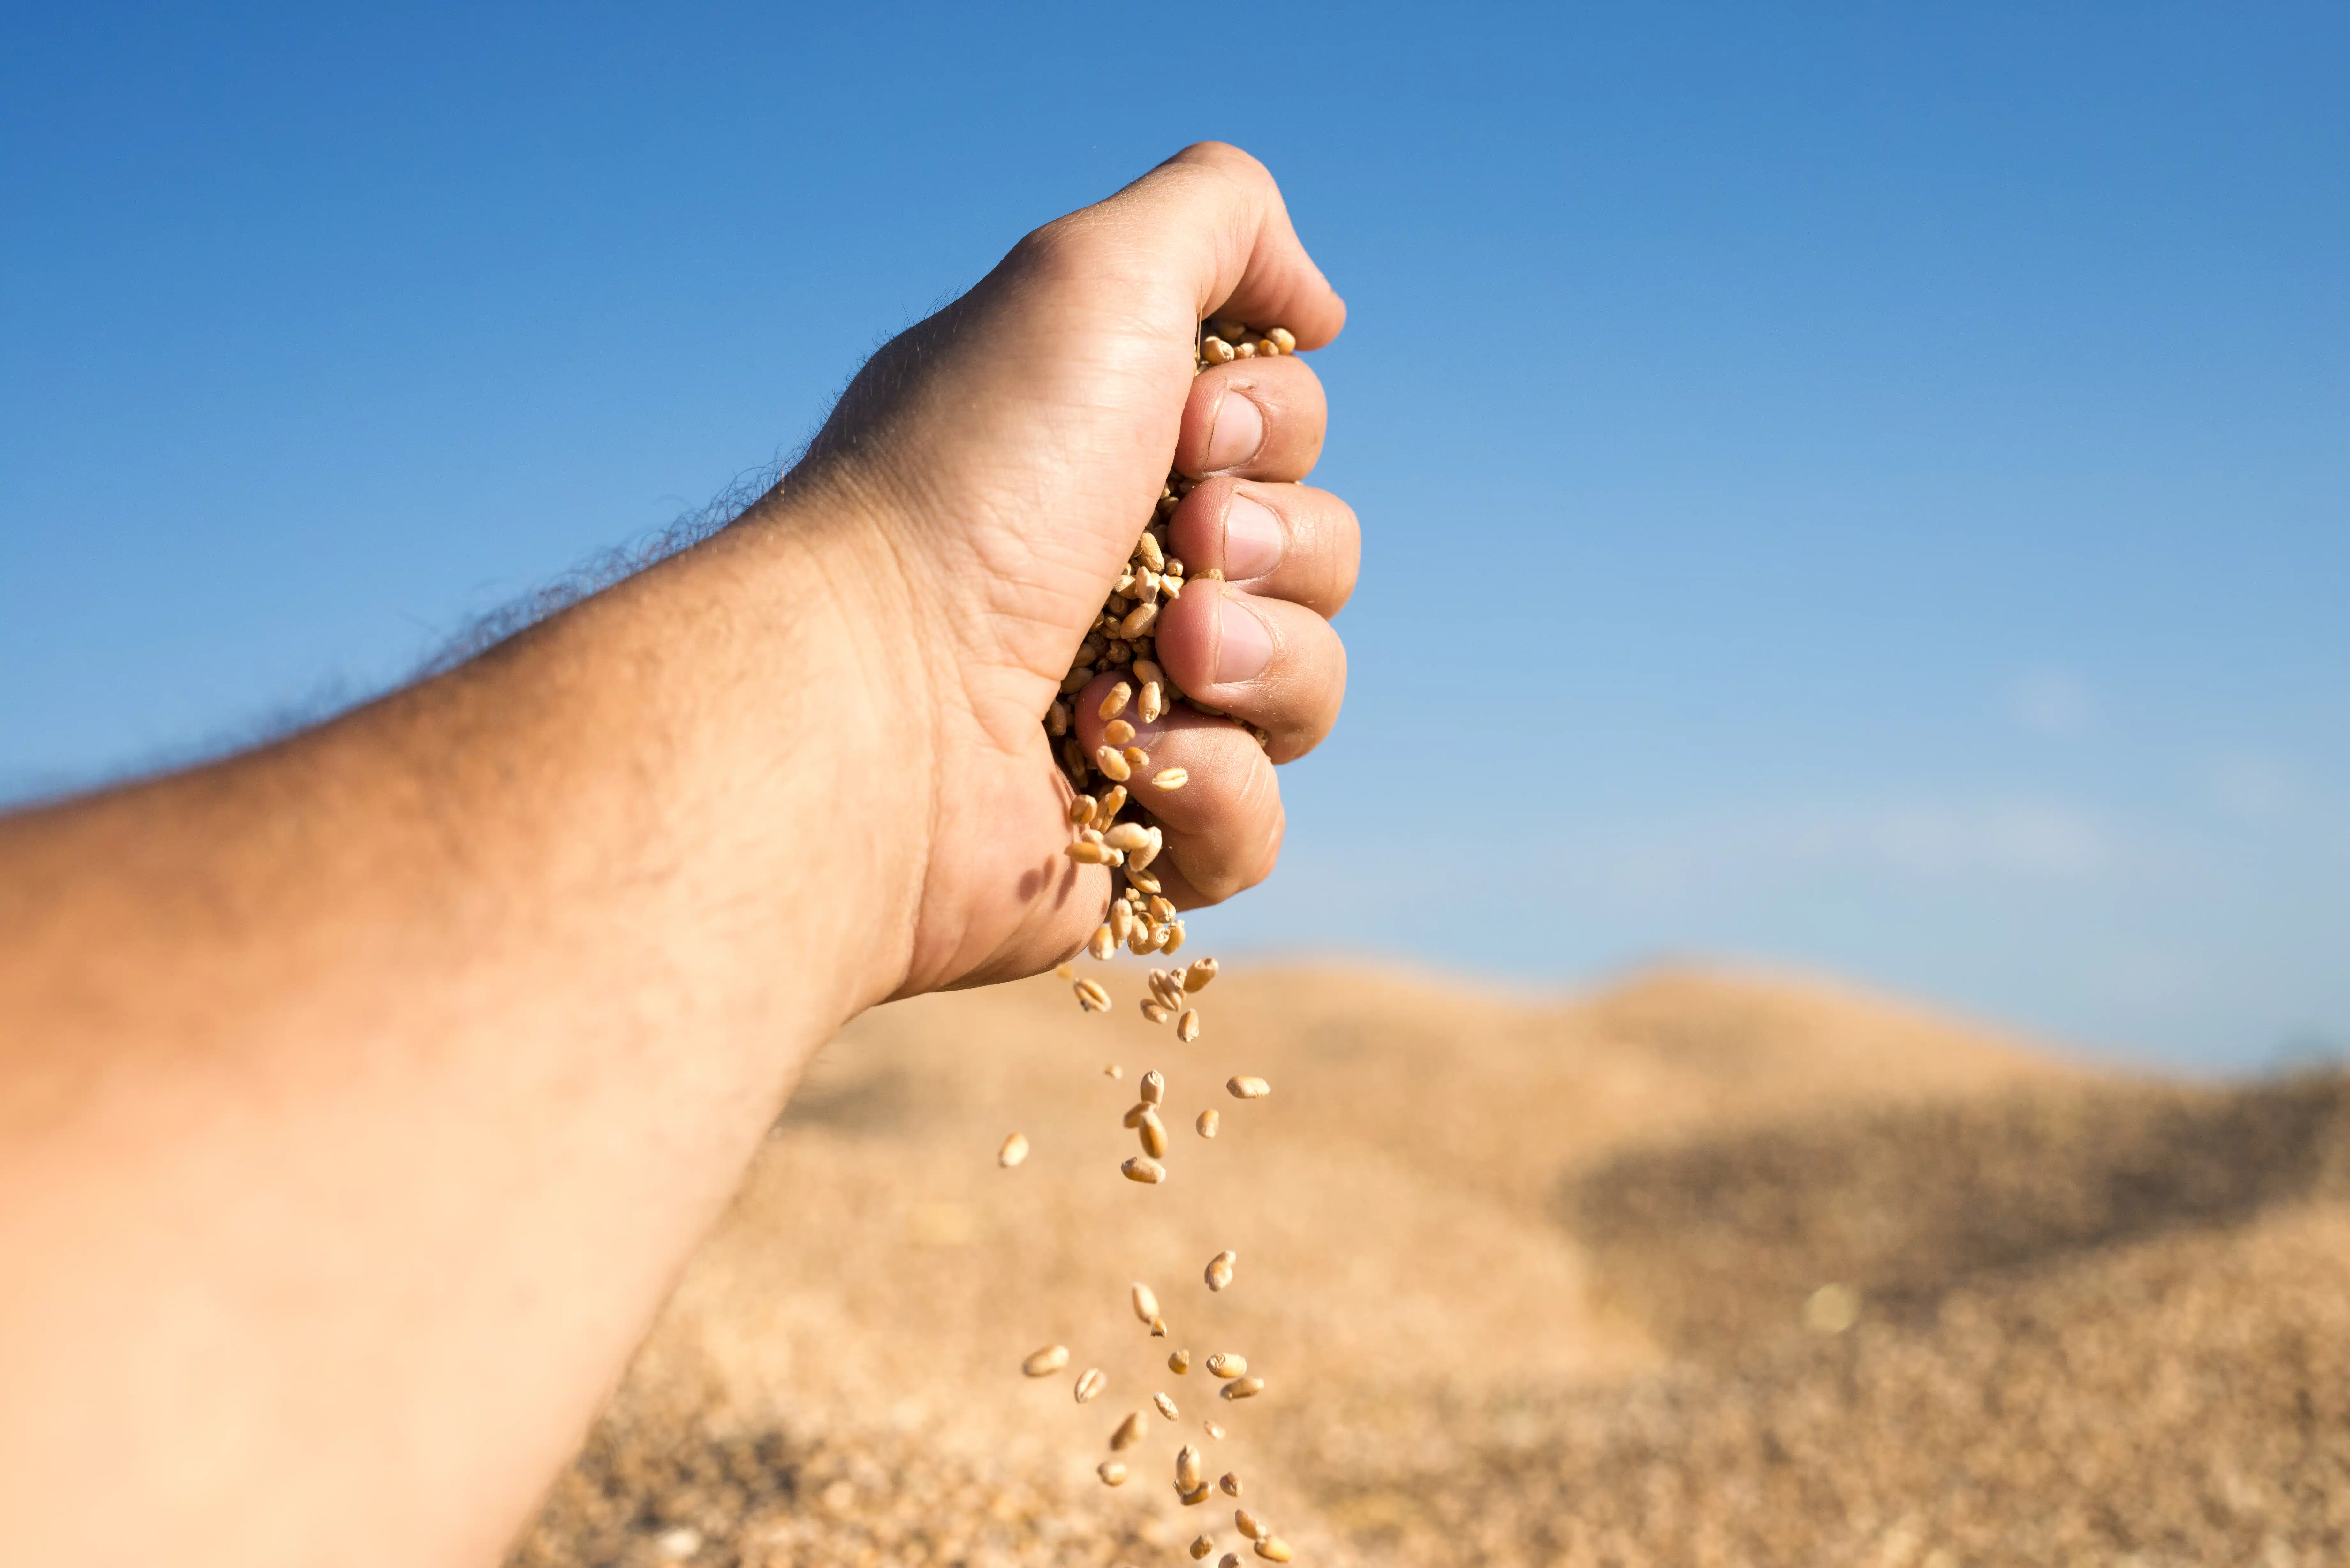 Semillas de trigo caen de una mano